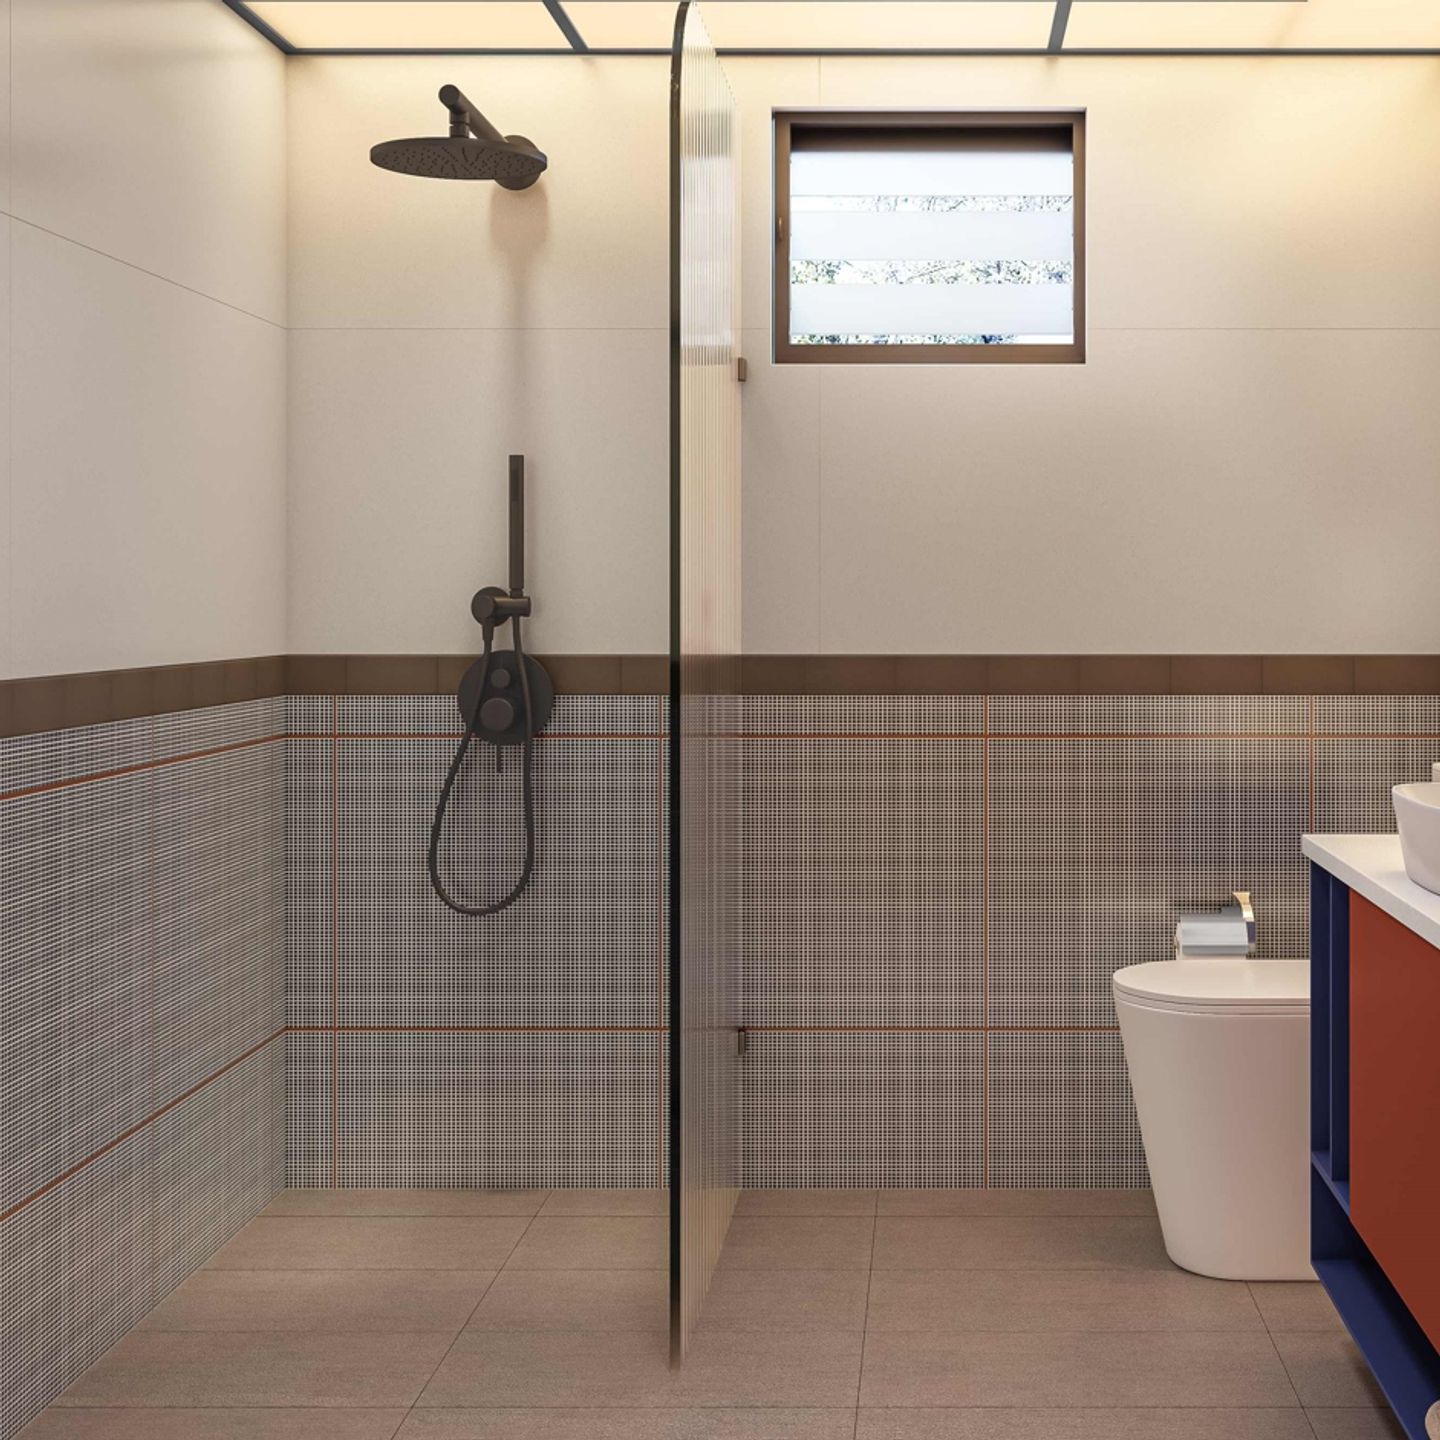 Rectangular Ceramic Tiles For Bathrooms - Livspace